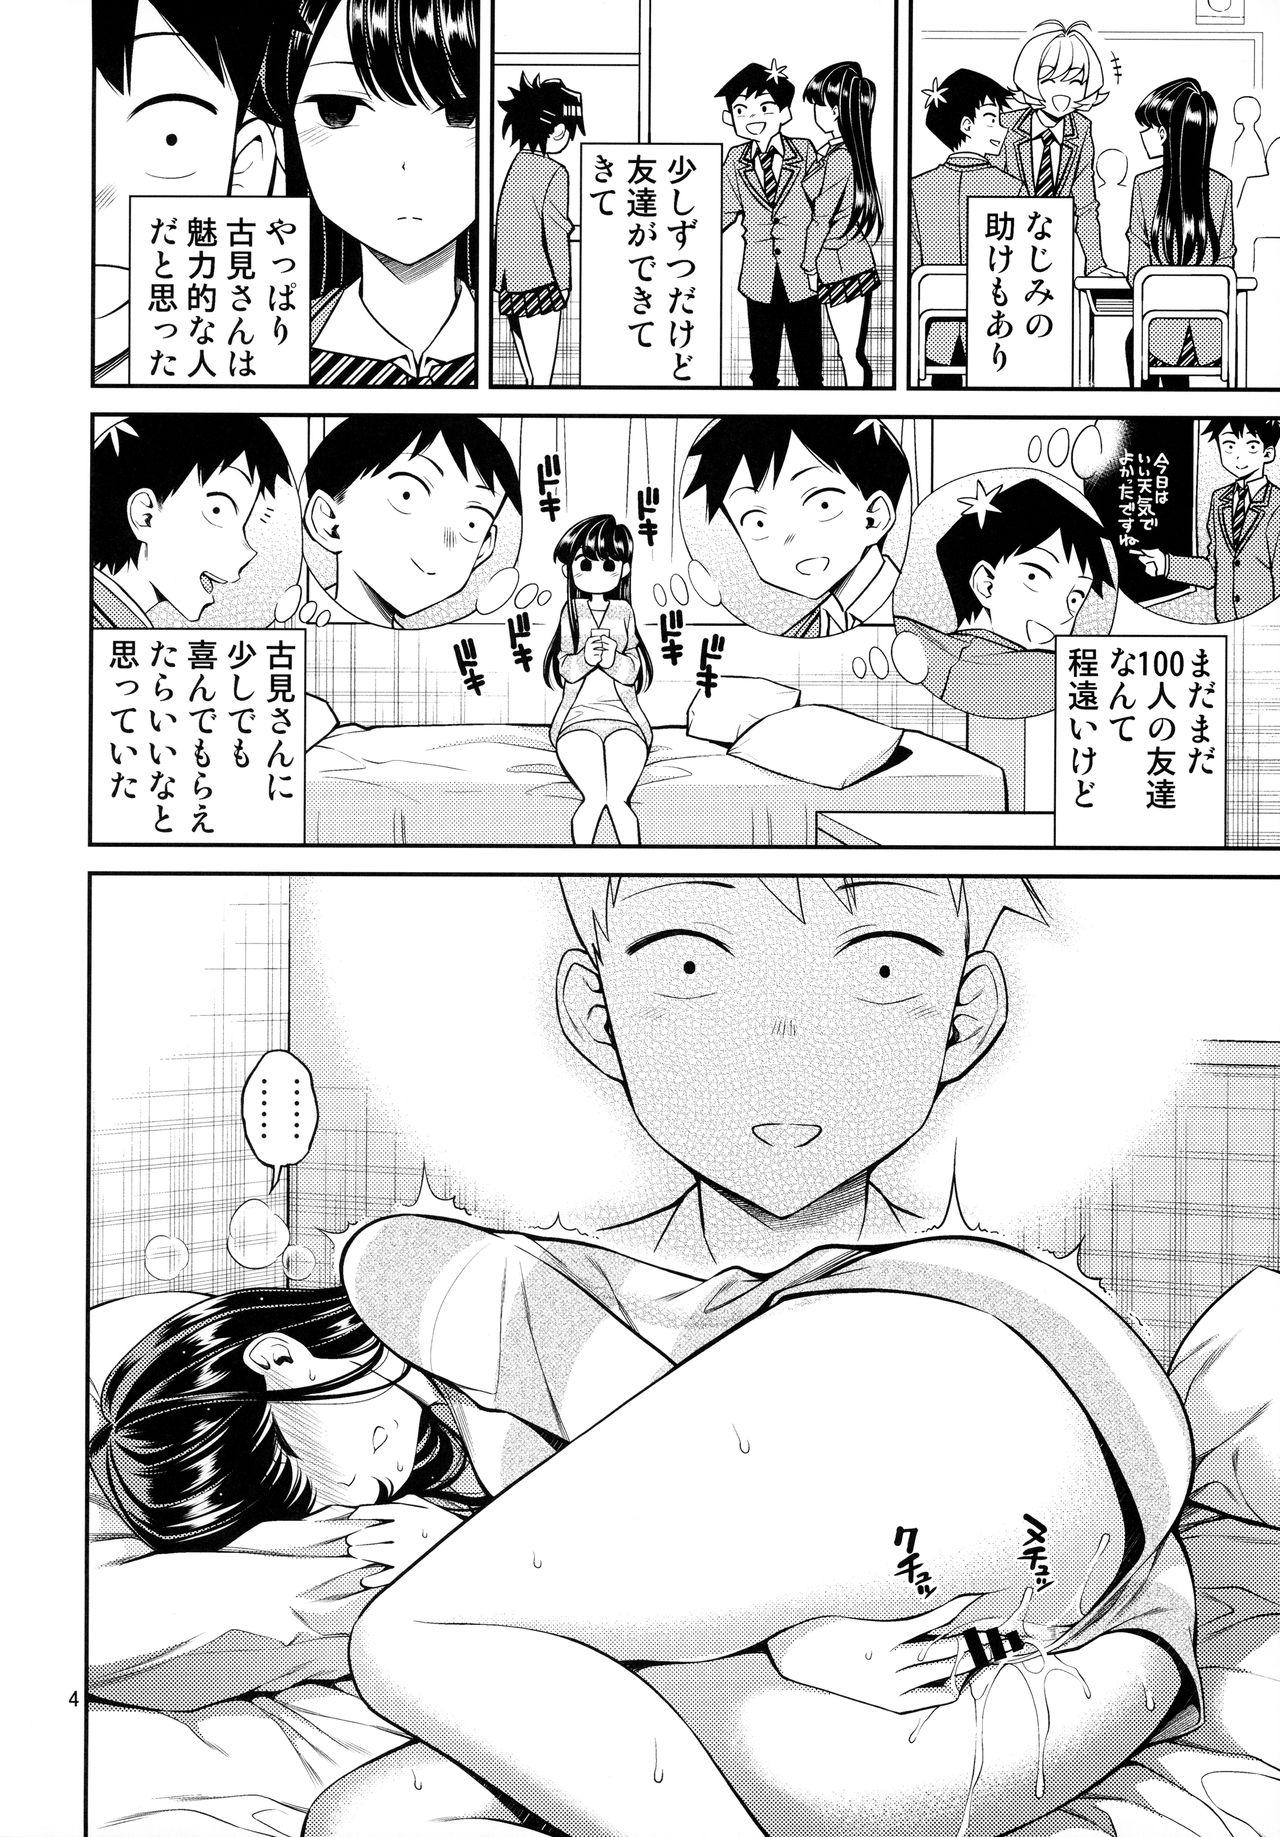 Slutty Komi-san wa, Binkan desu. - Komi-san wa komyushou desu. Ffm - Page 3